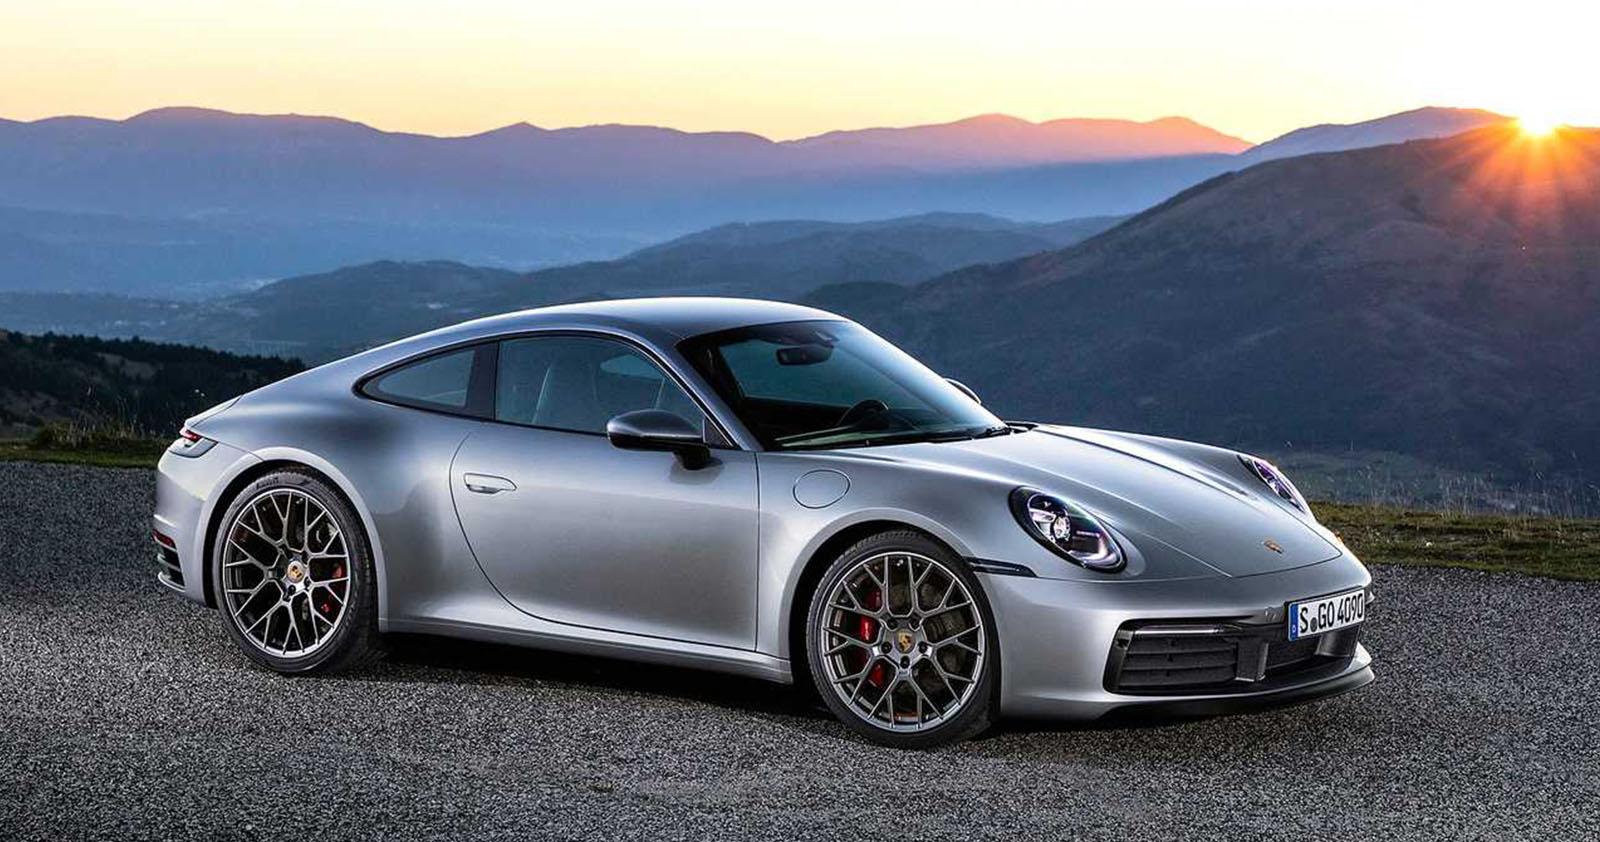 2022 grey Porsche Carrera S on a hill